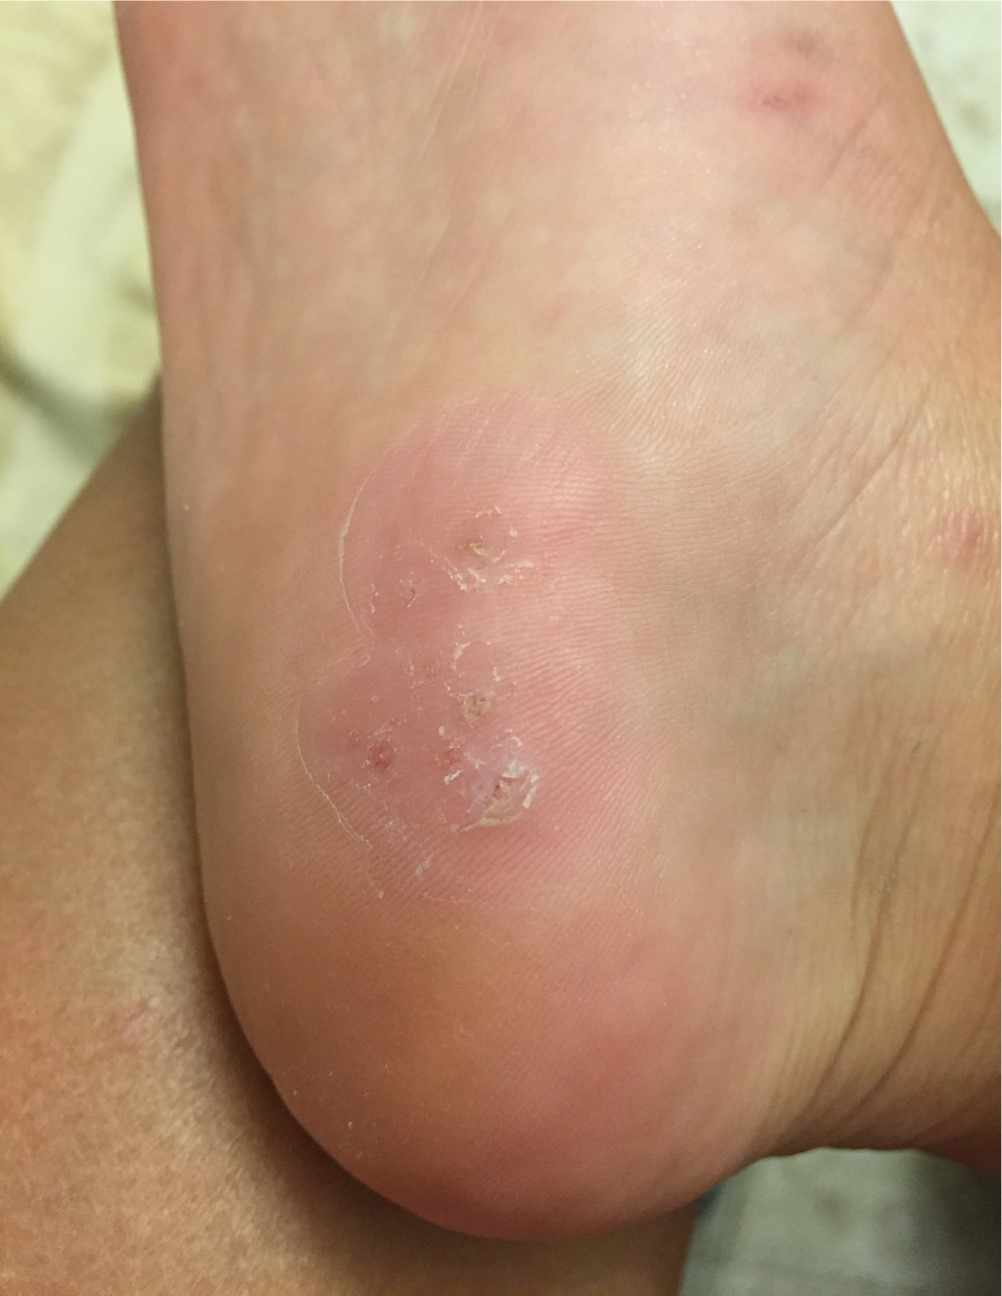 wart on foot black spot